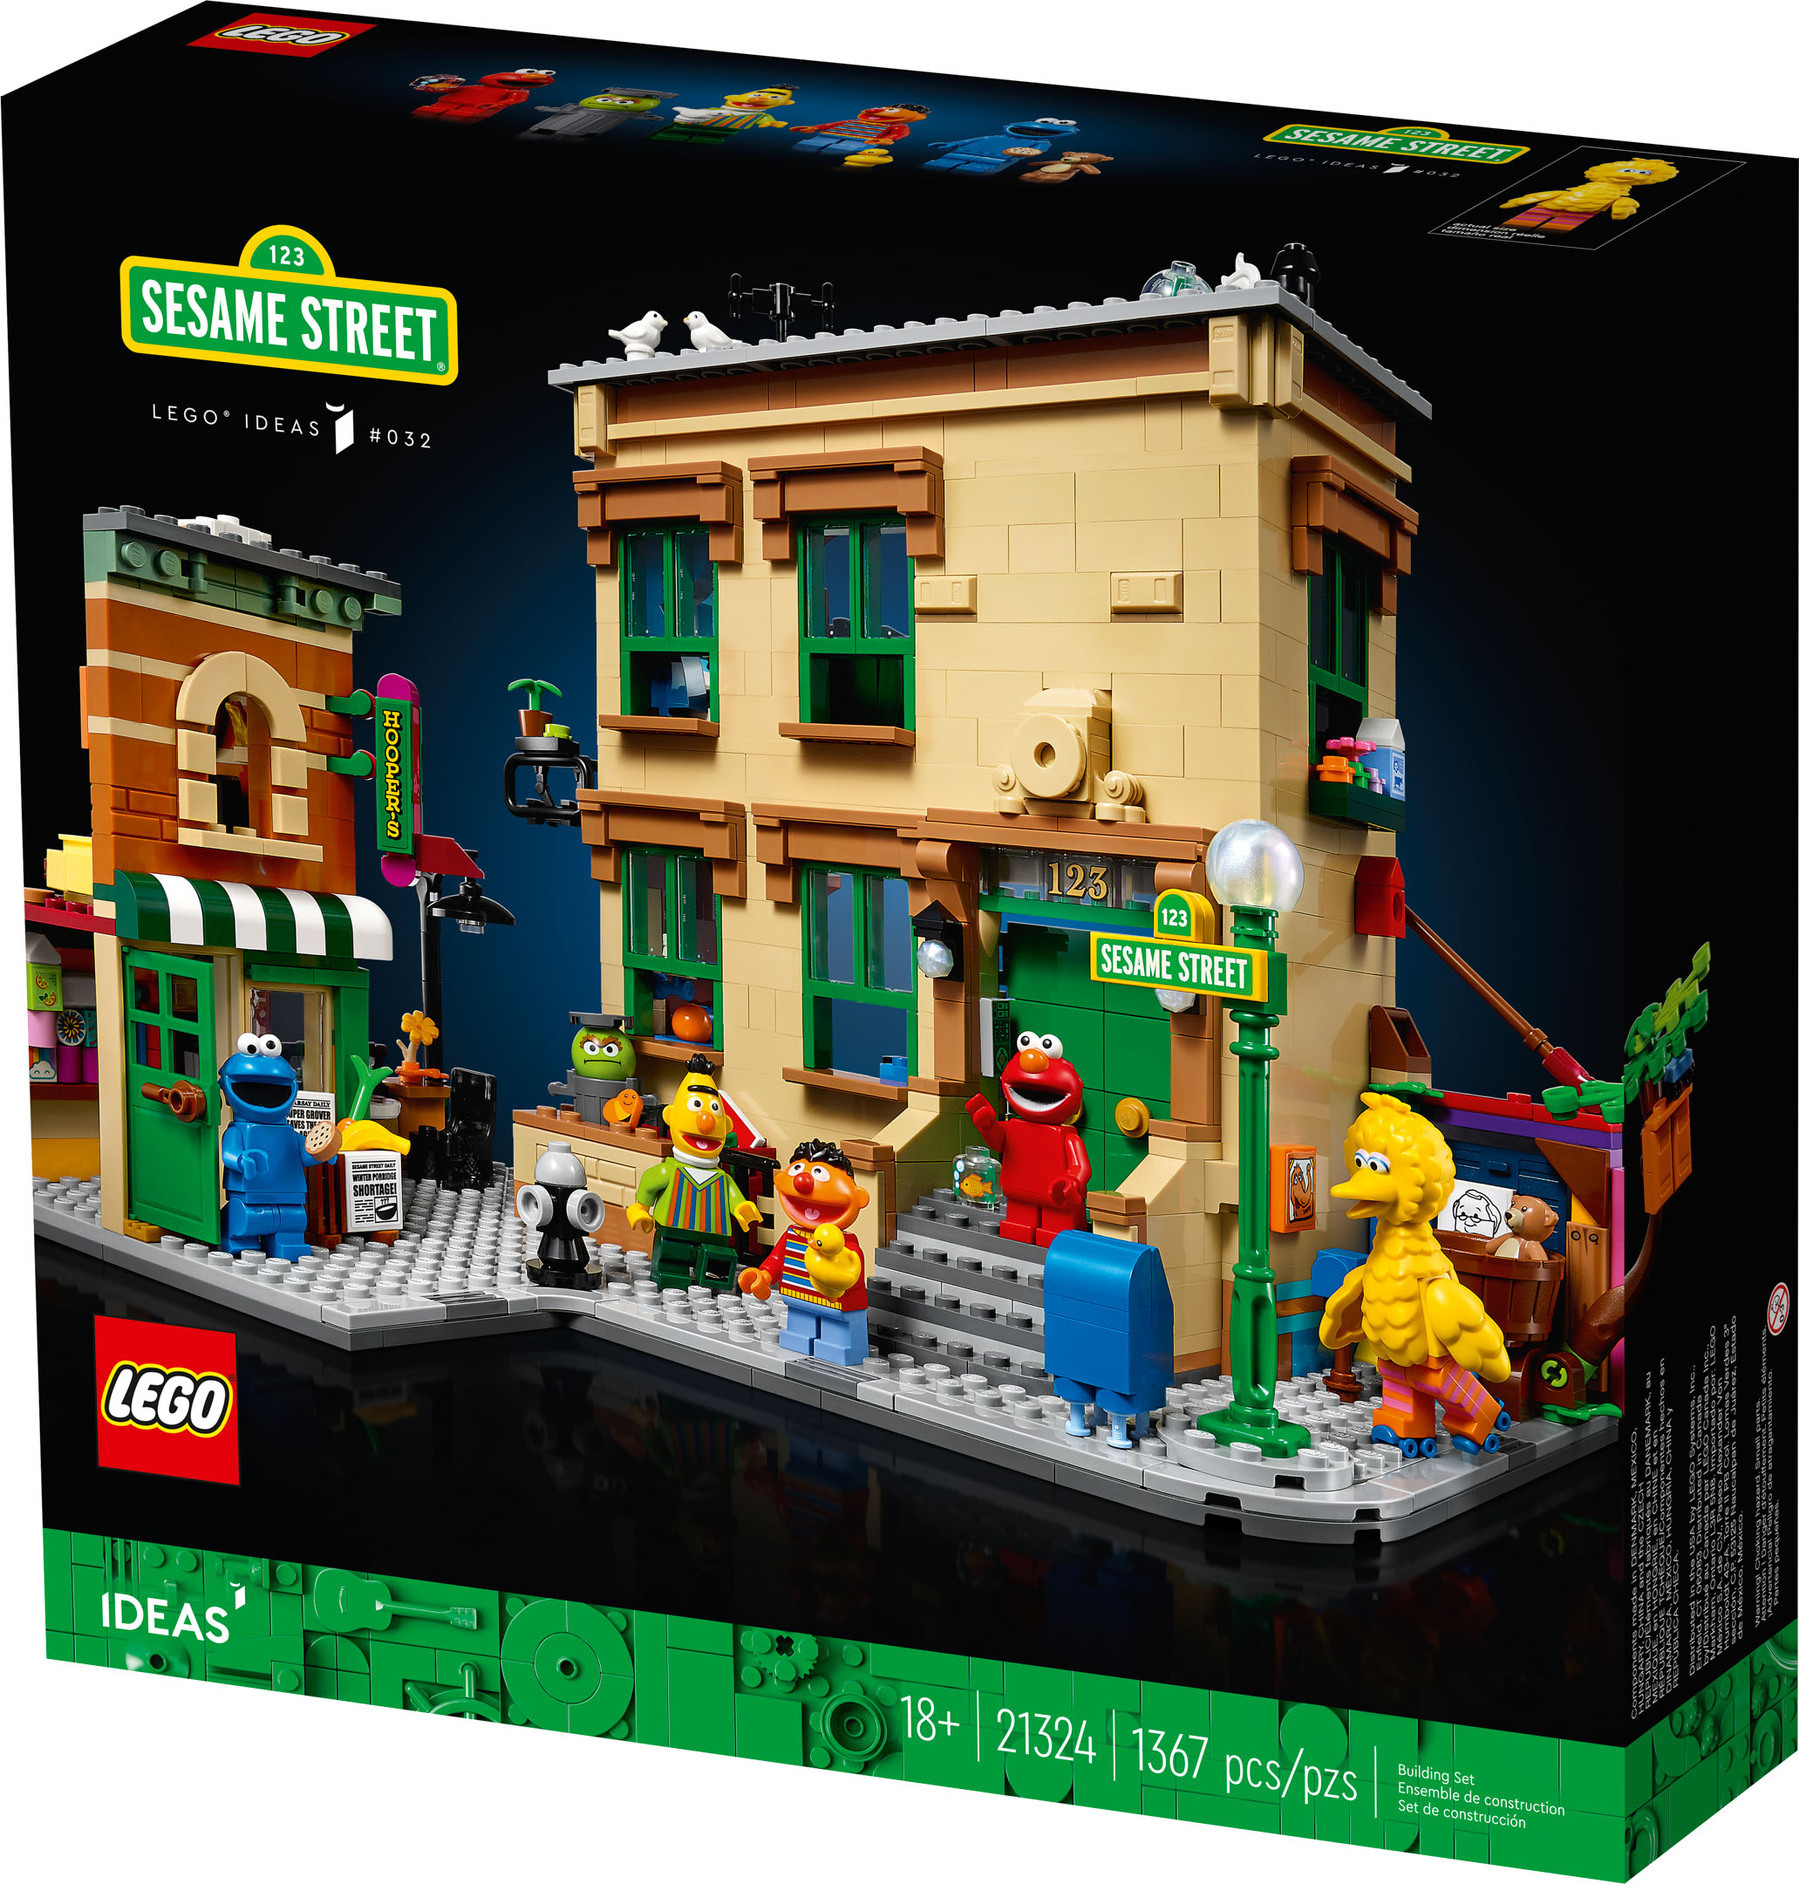 LEGO Ideas 21324 Sesame Street N36EW 1